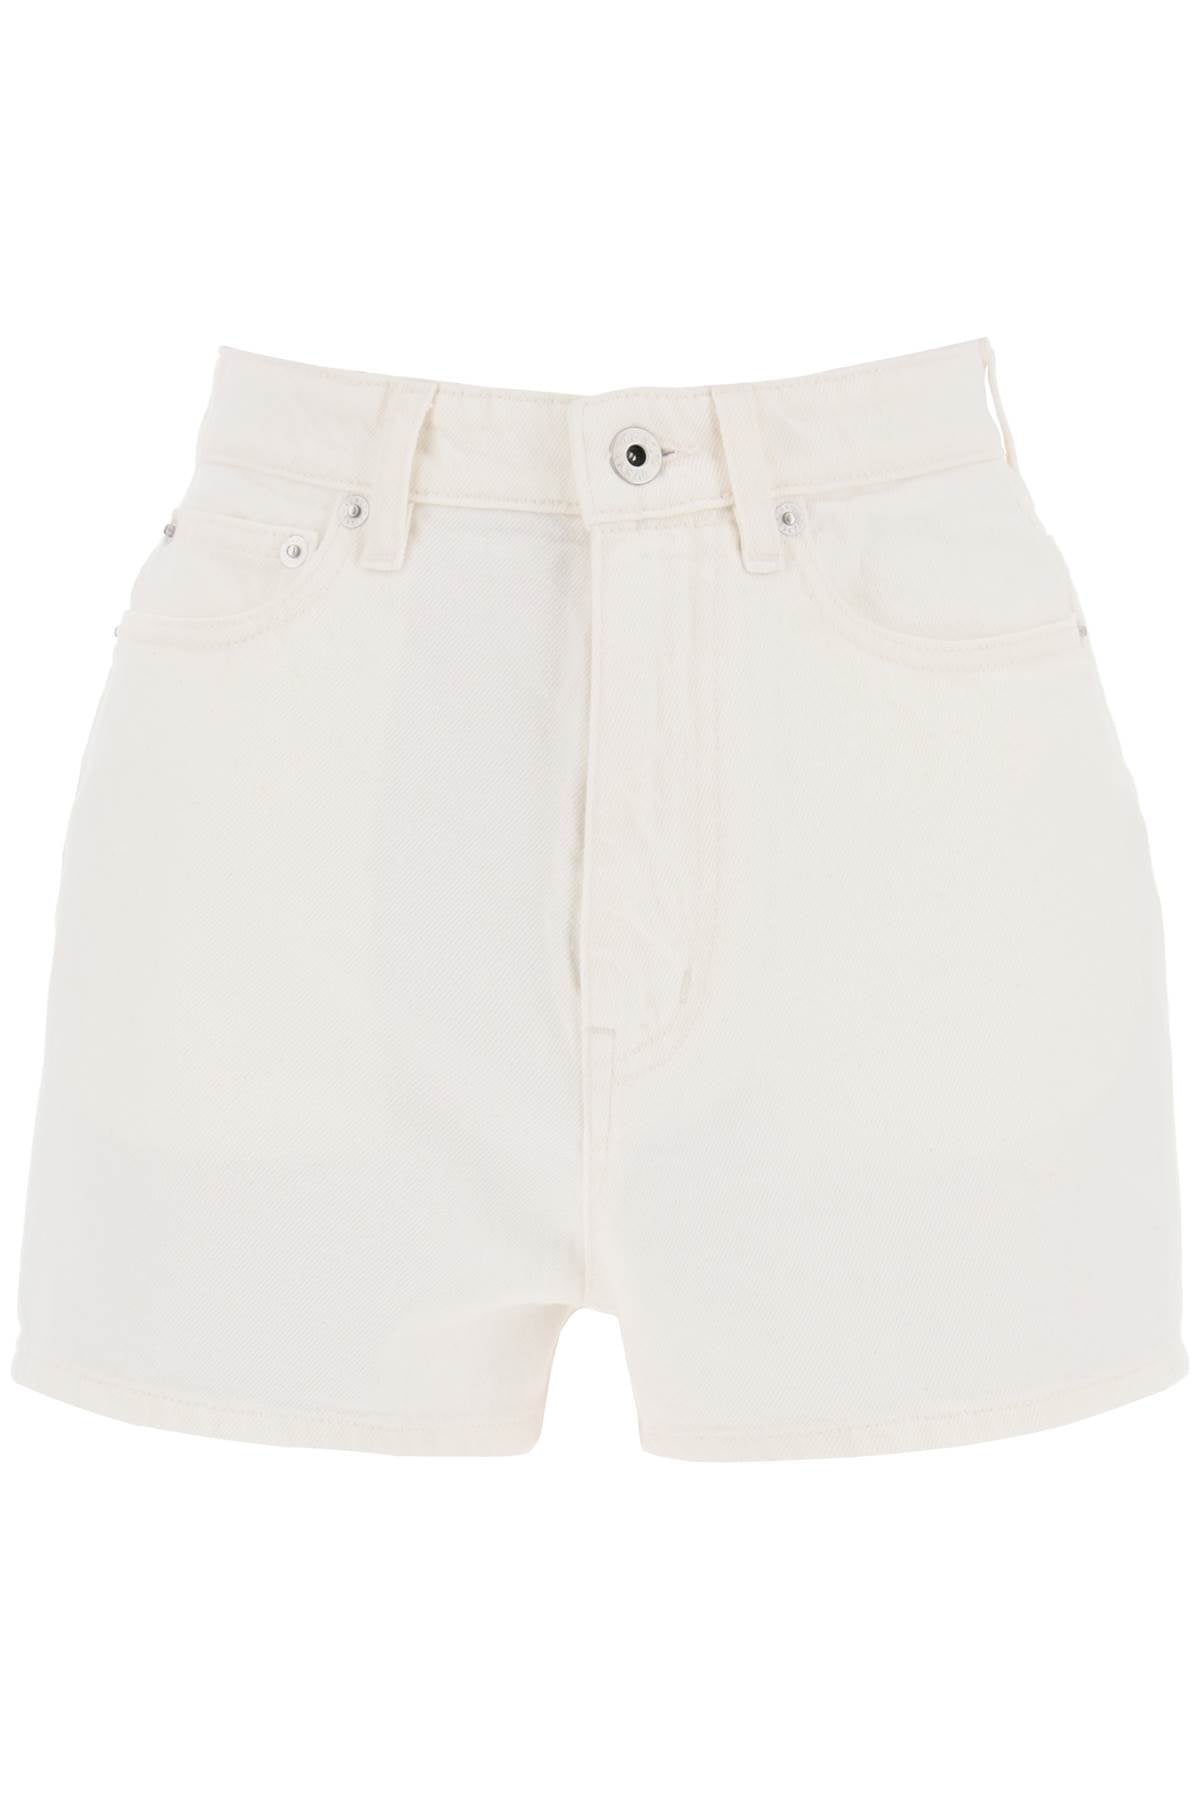 Kenzo Japanese Denim Shorts   Bianco